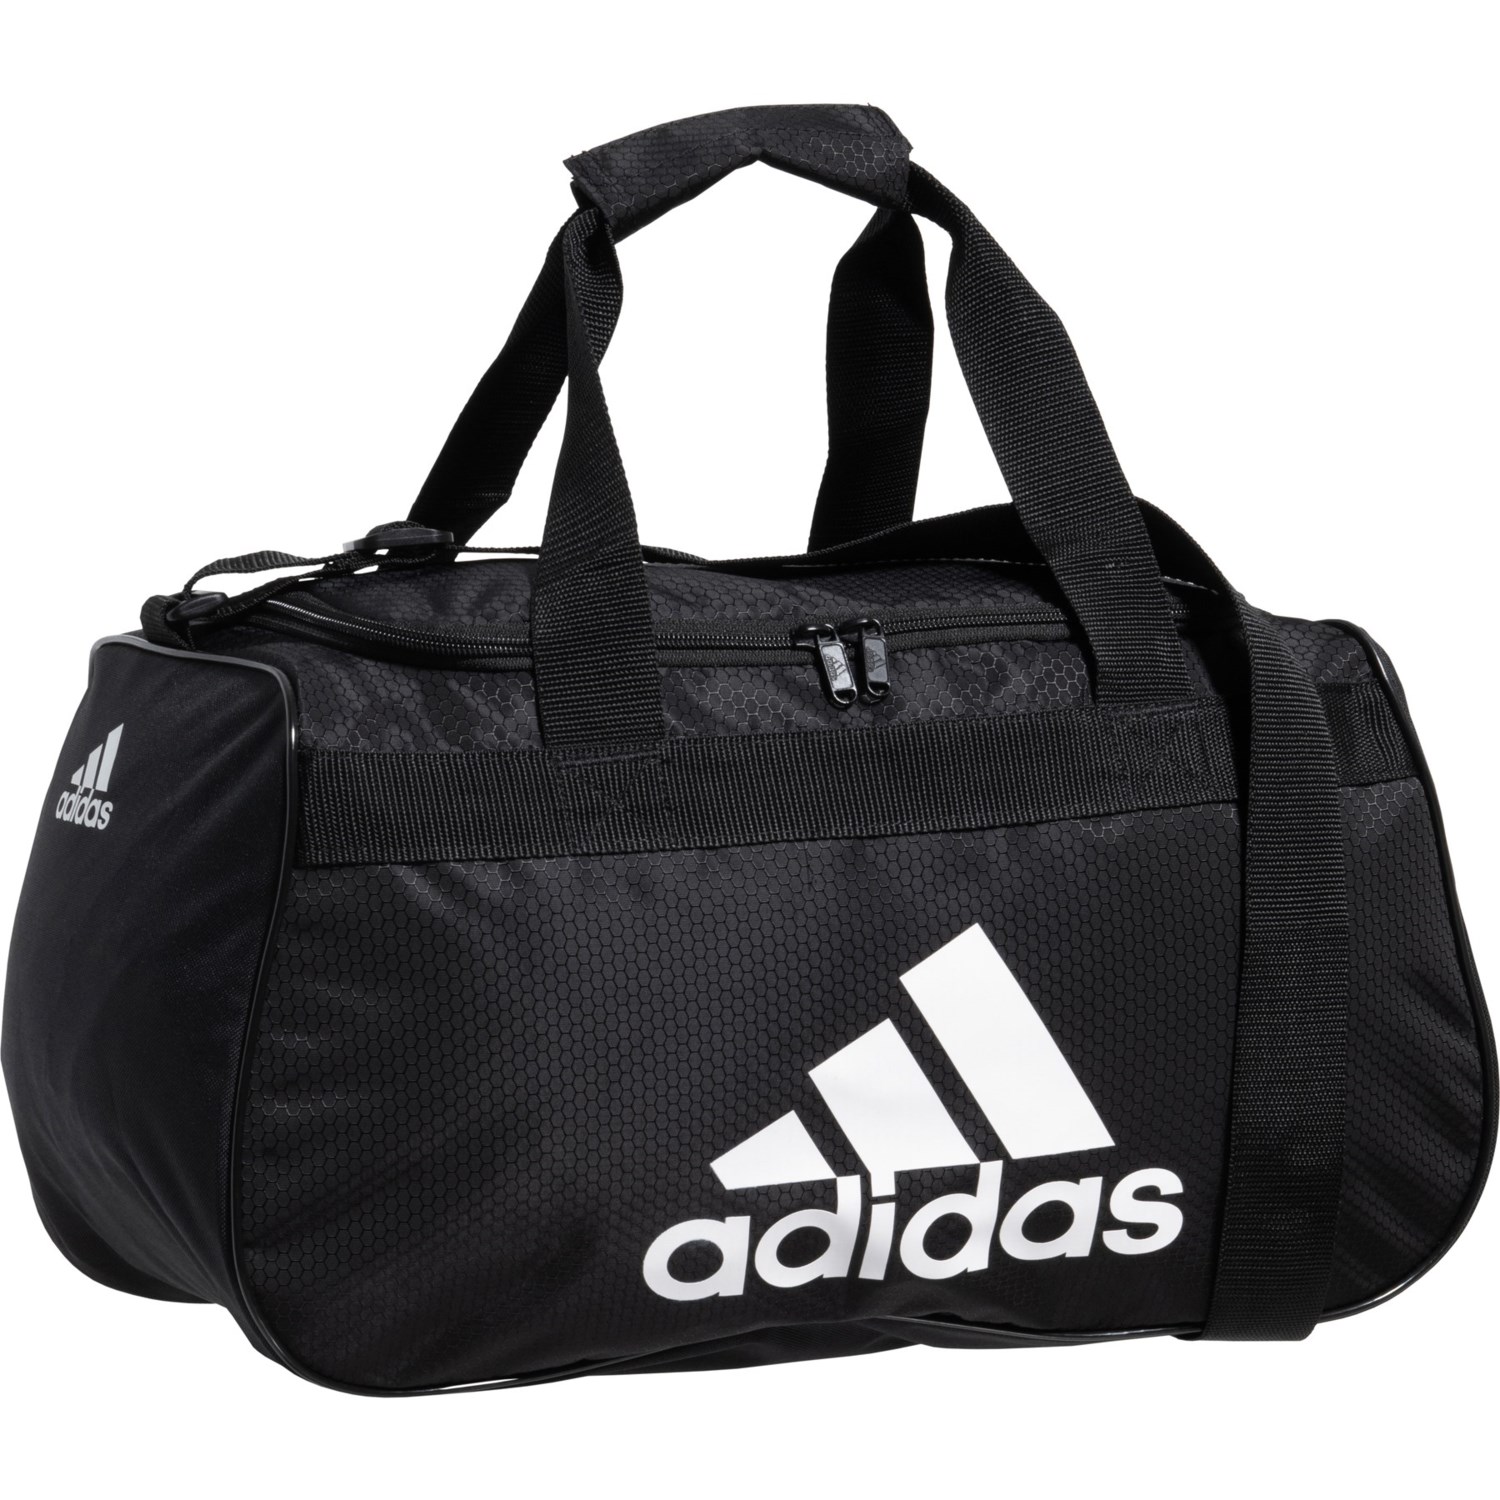 Adidas Defense 2 Duffel Bag - Medium